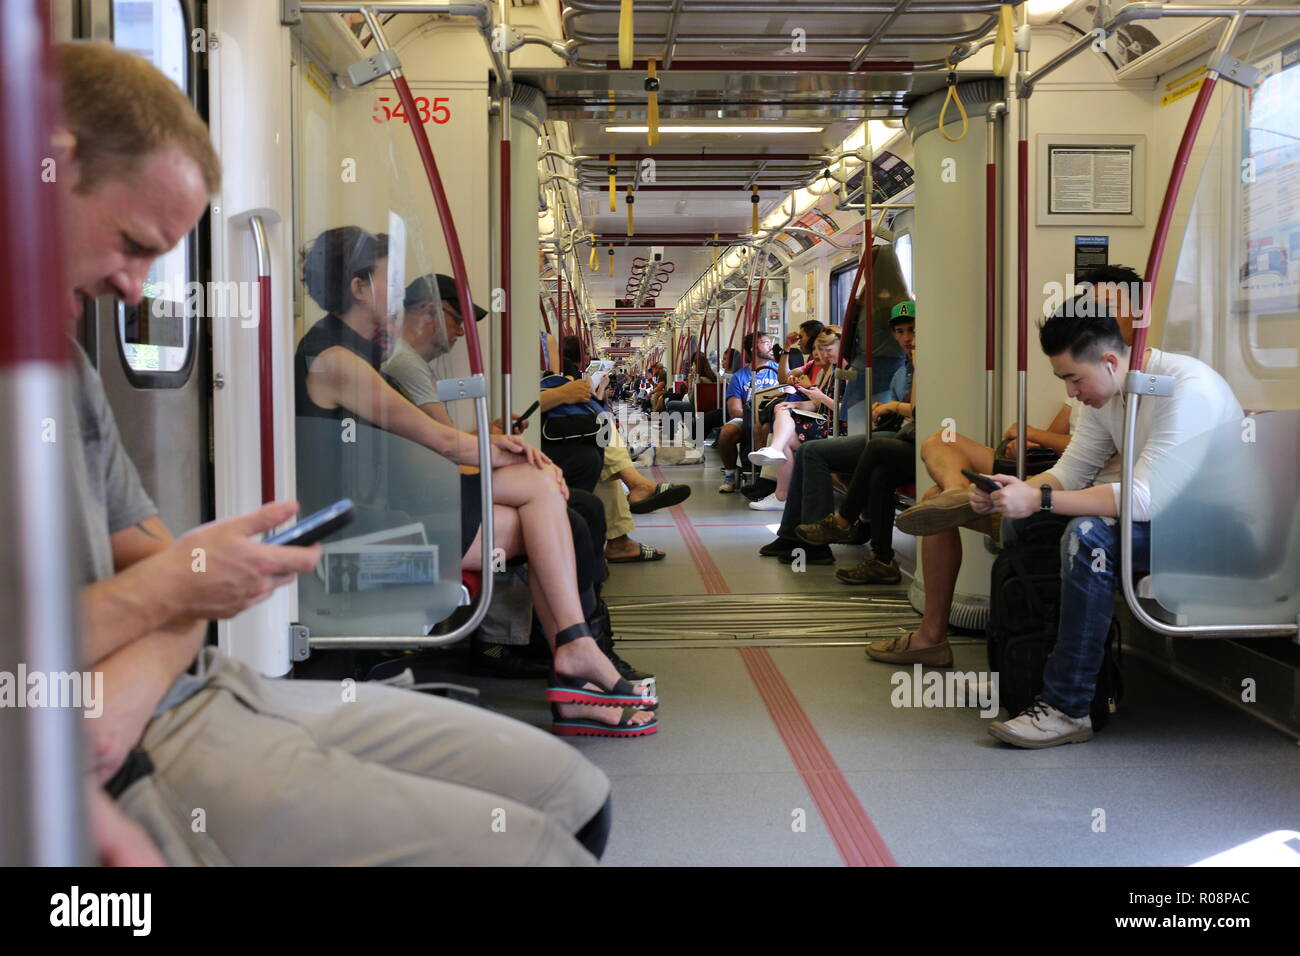 L'intérieur du métro et de personnes regardant leurs téléphones - Toronto, Ontario, Canada. Banque D'Images